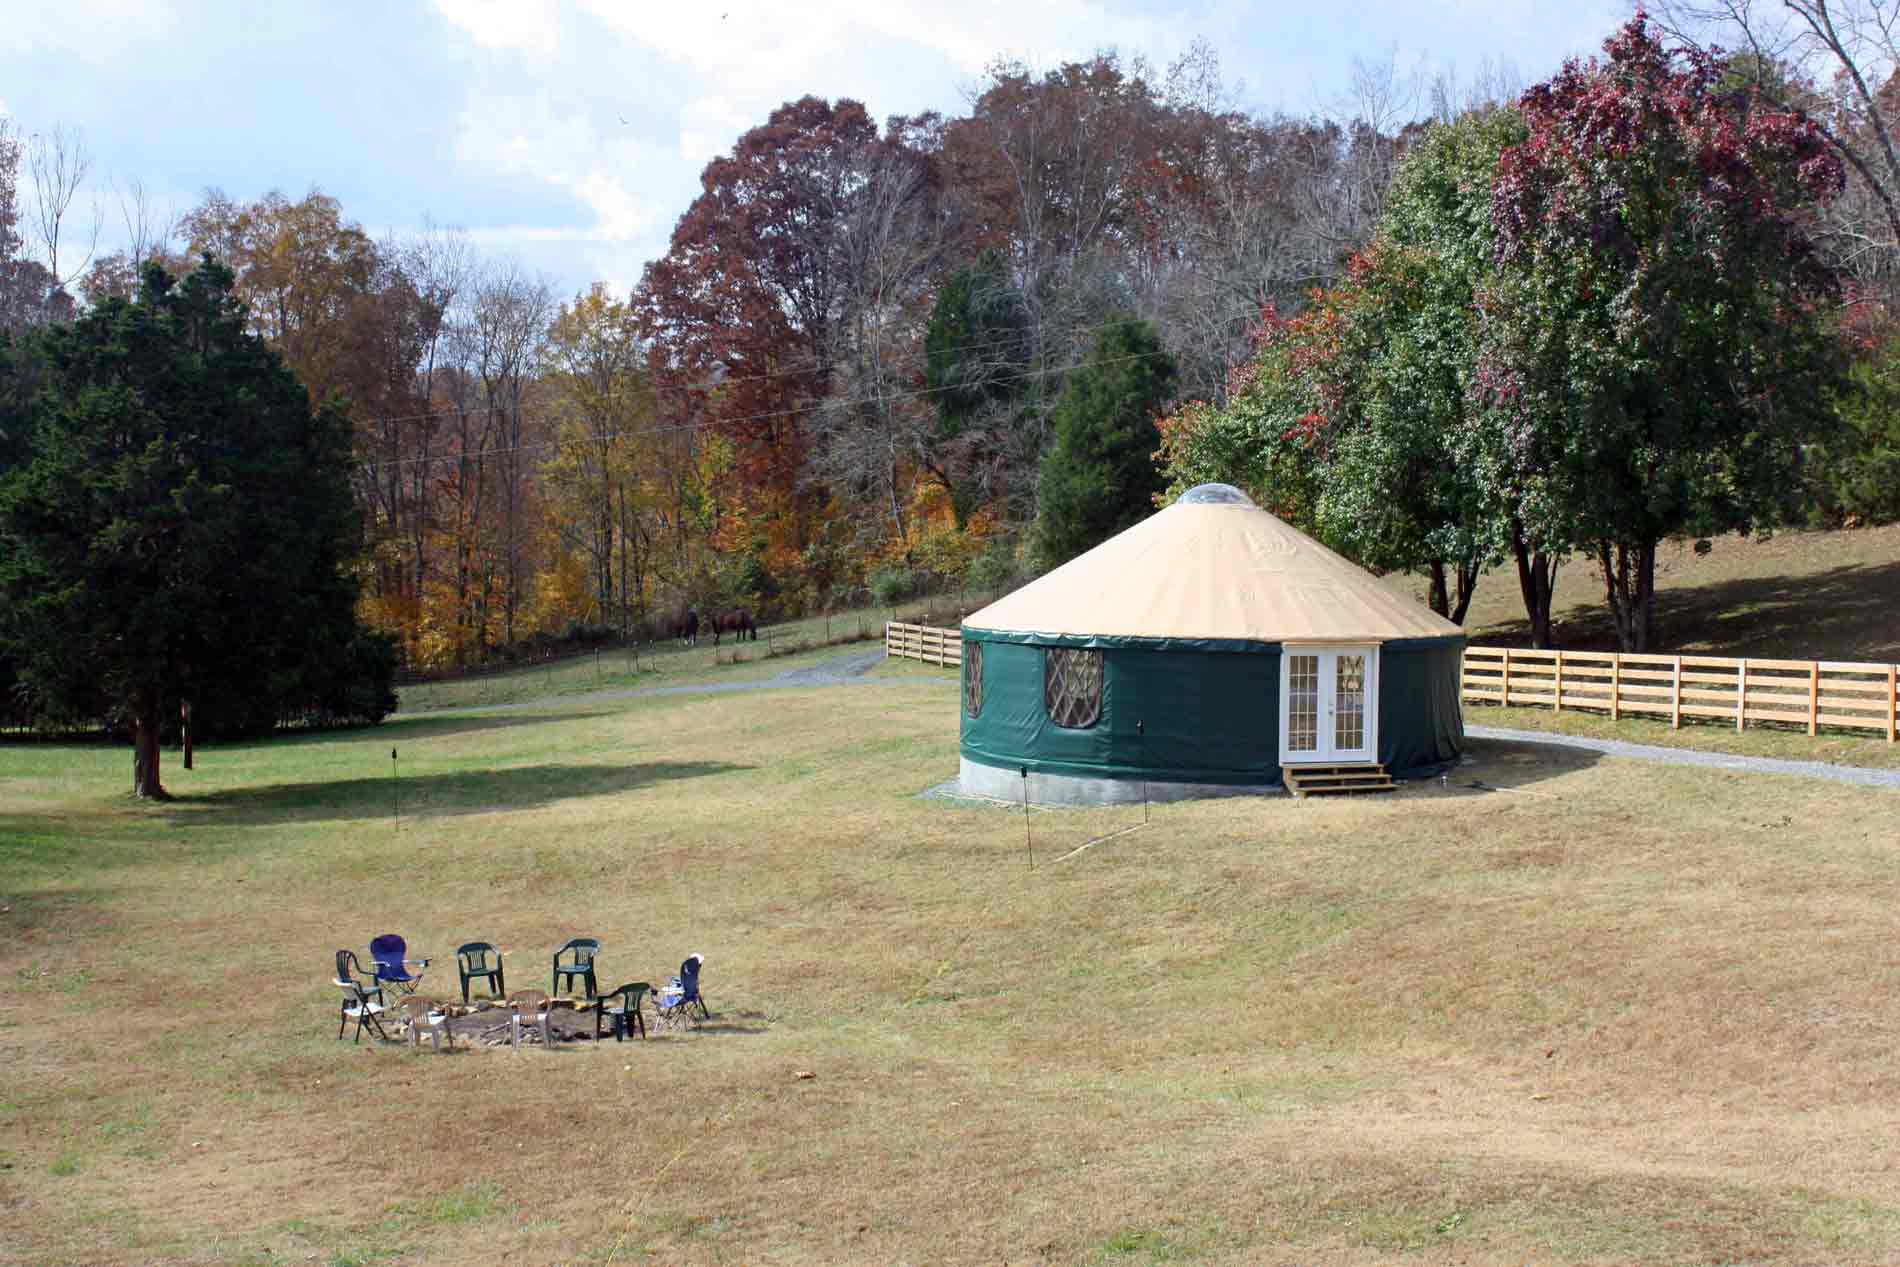 Yurt-in-field